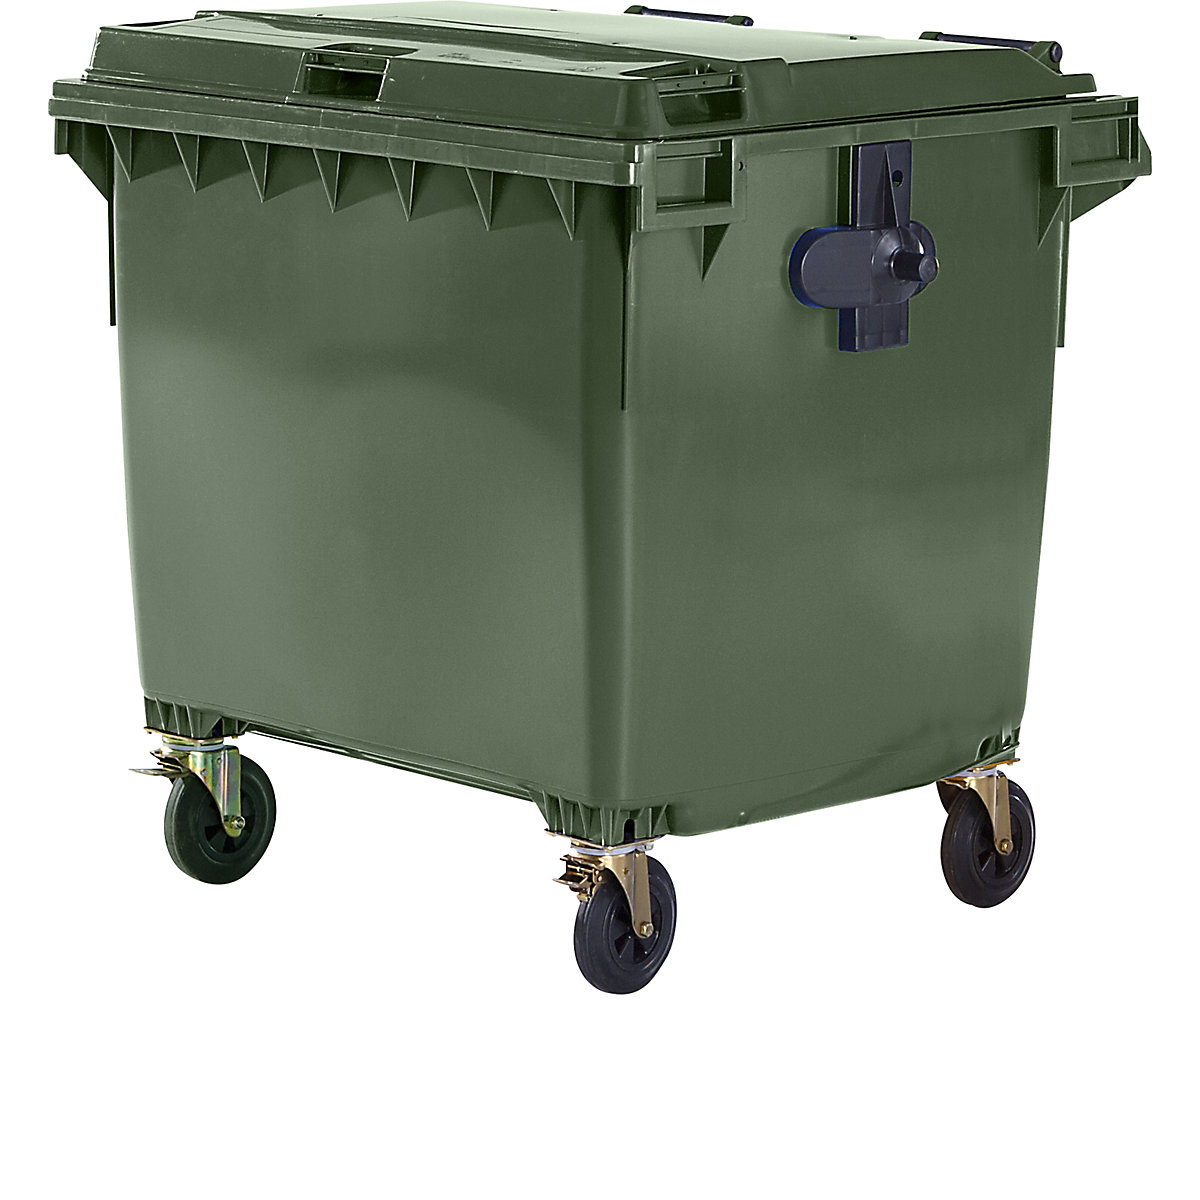 Container per rifiuti in plastica, DIN EN 840